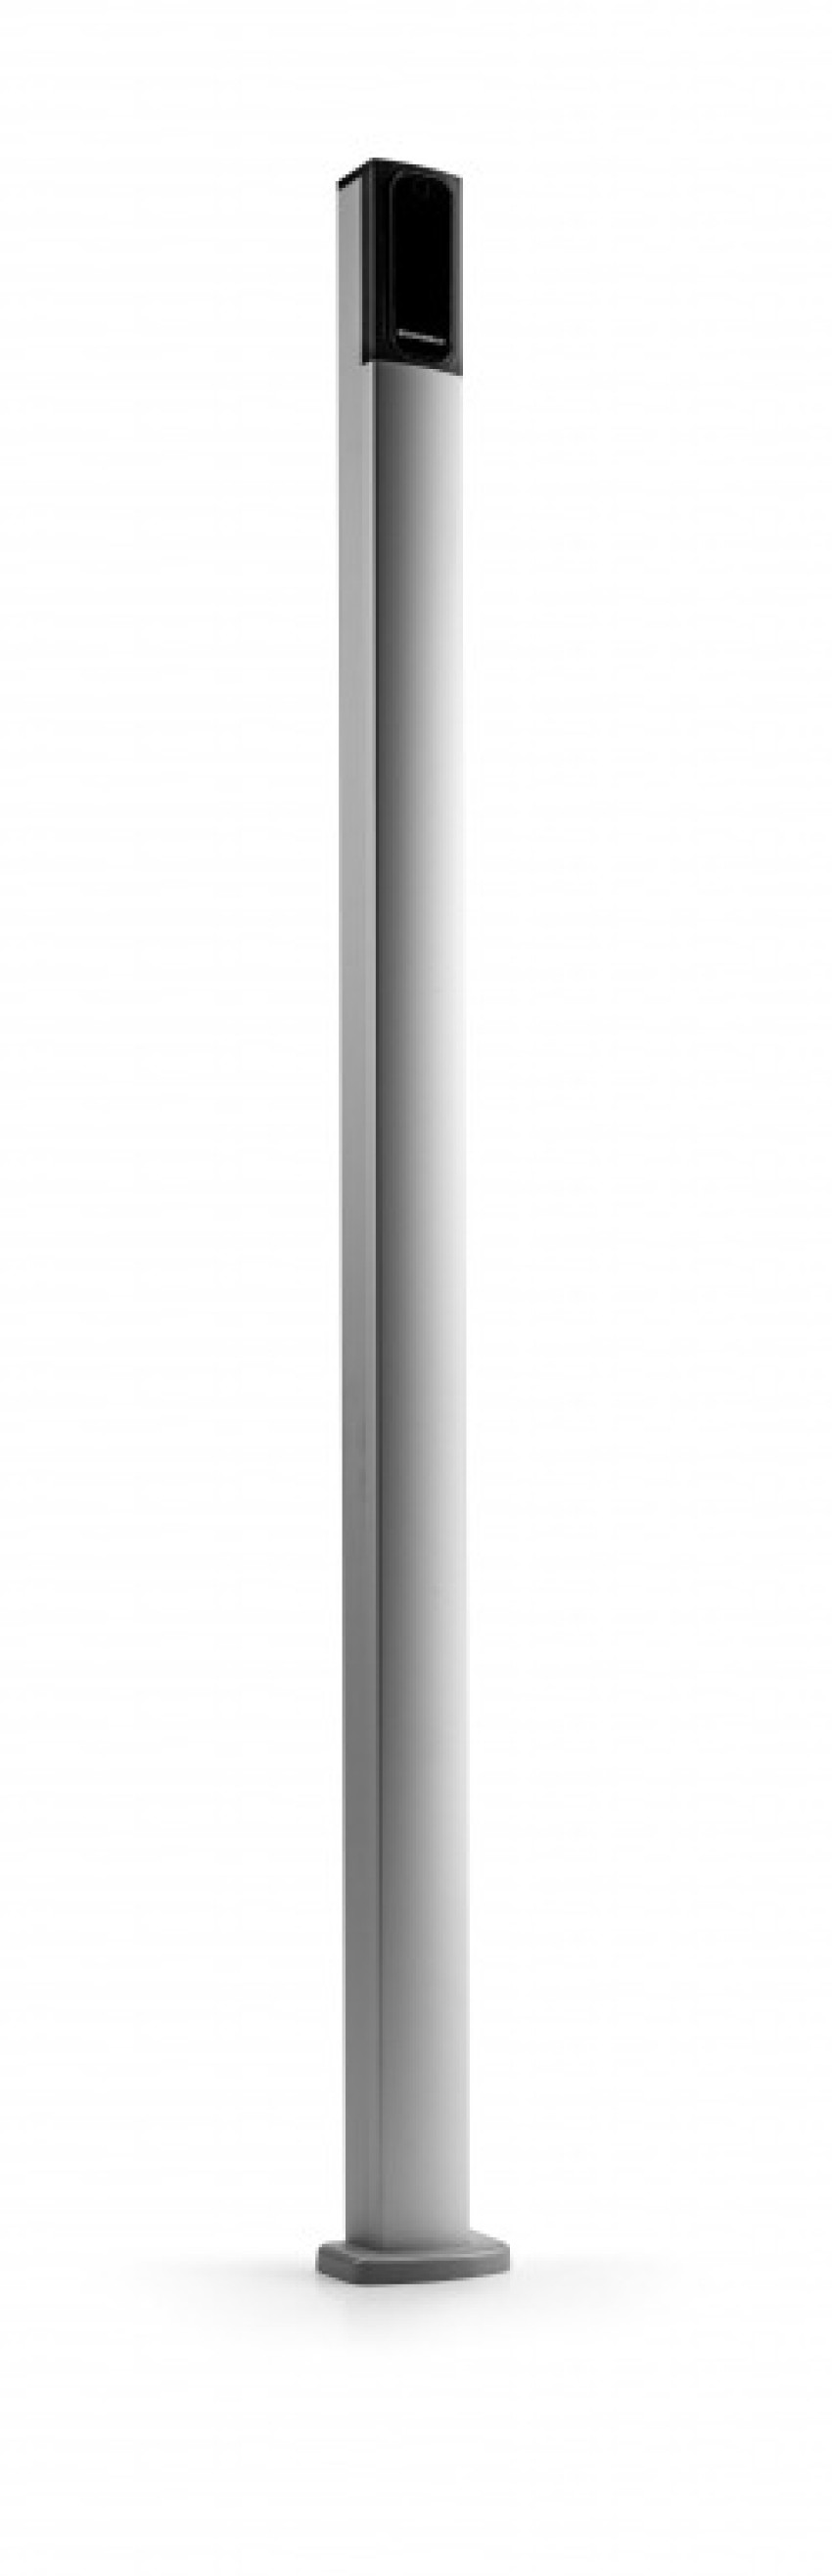 KIFUTÓ TERMÉK - Alumínium oszlop; 1 m magas; vékony kialakítás; vágható - kifutó termék 